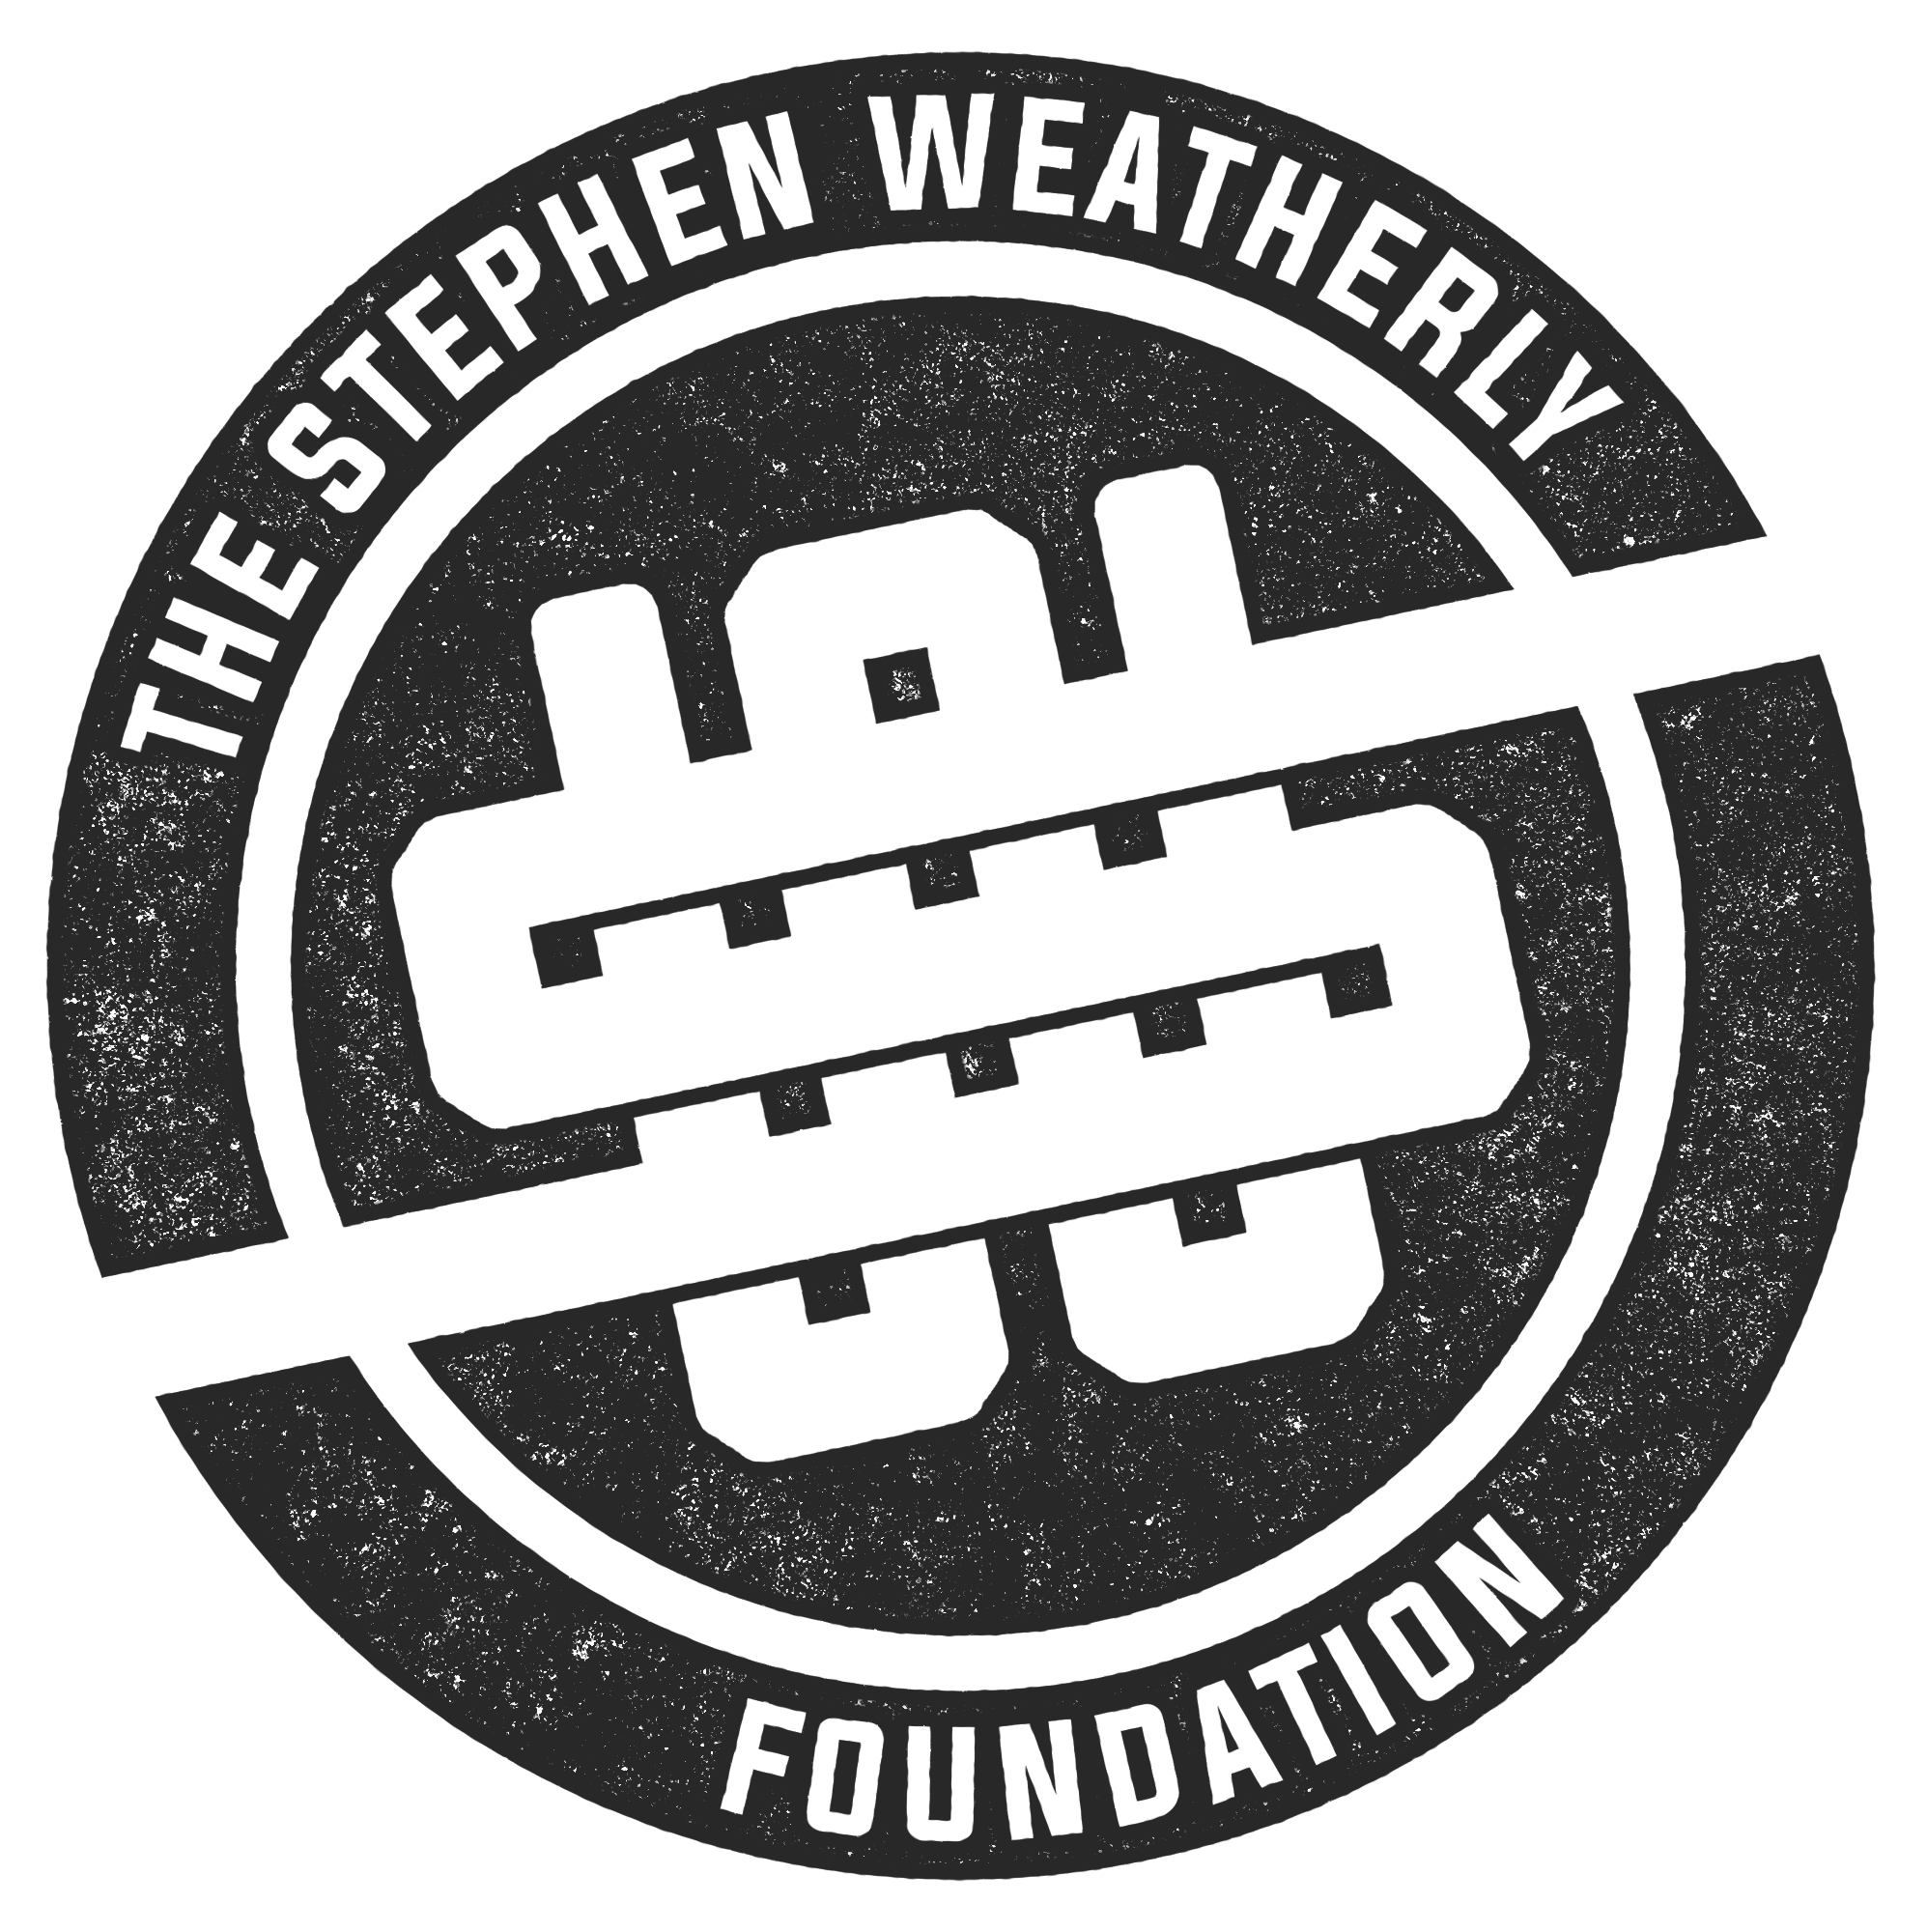 The Stephen Weatherly Foundation logo